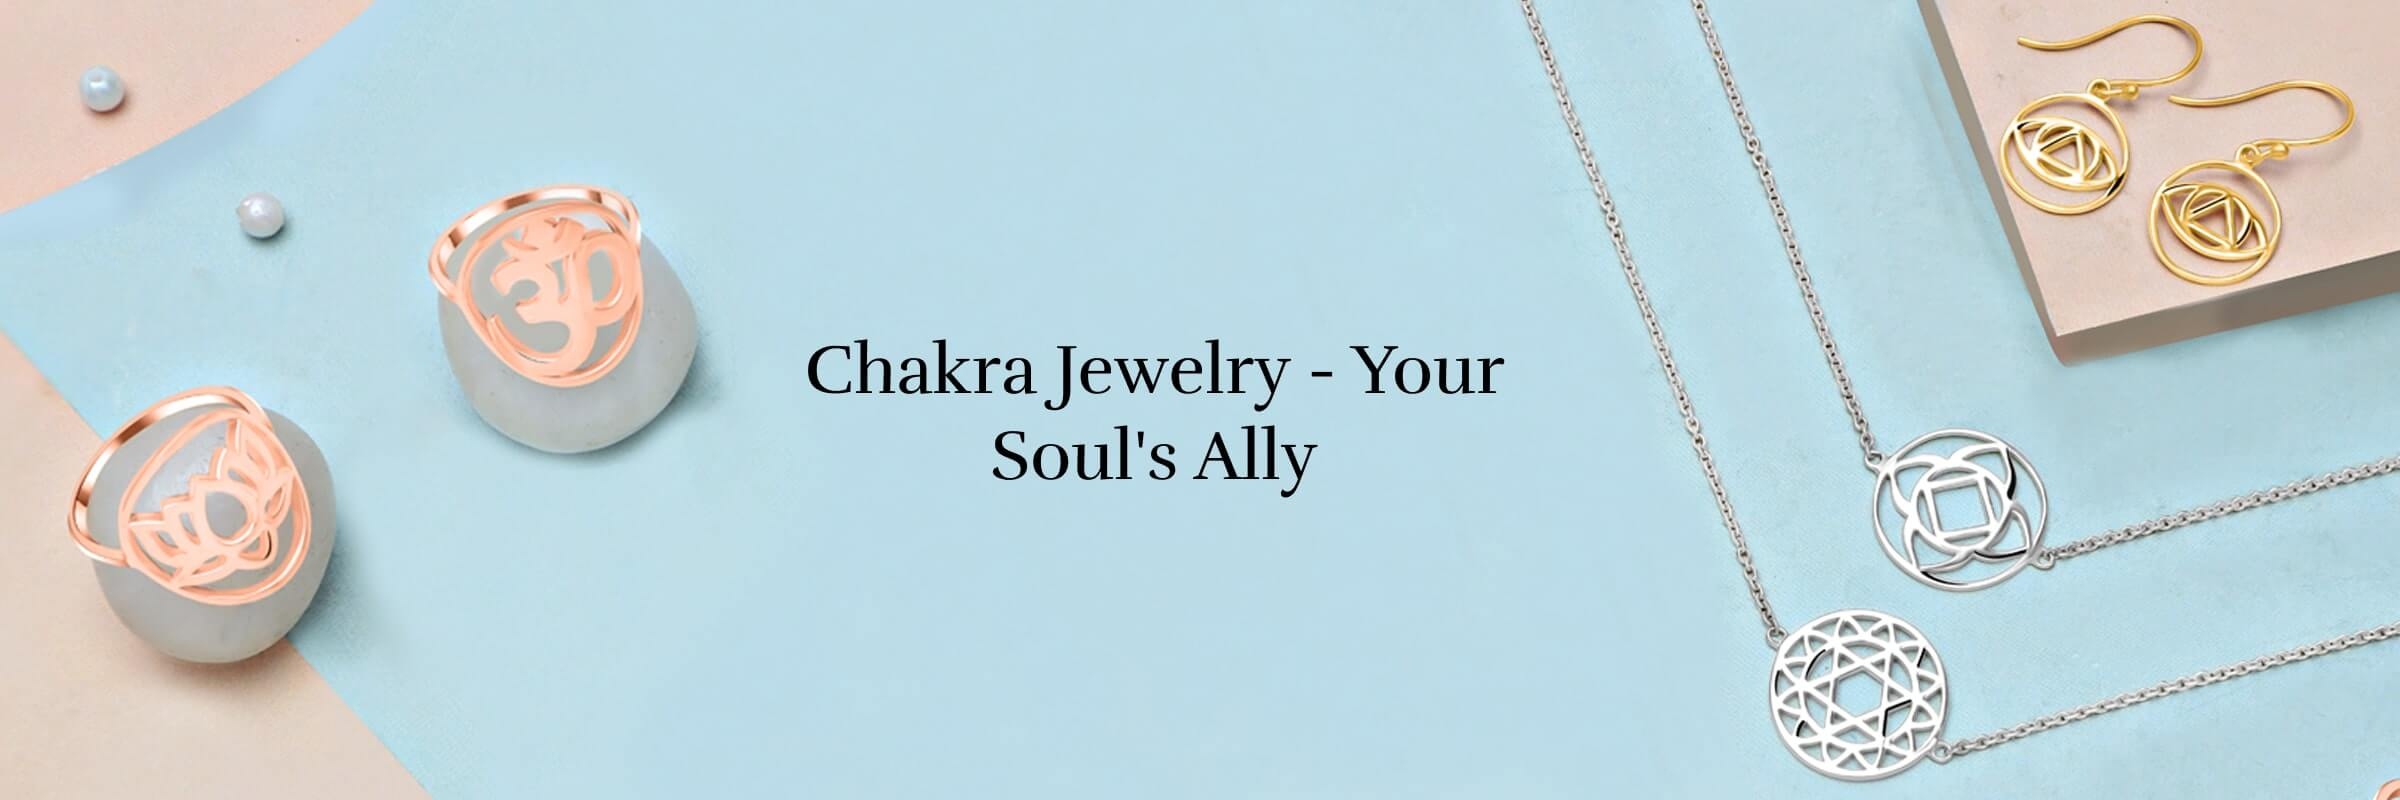 Chakra jewelry Benefits